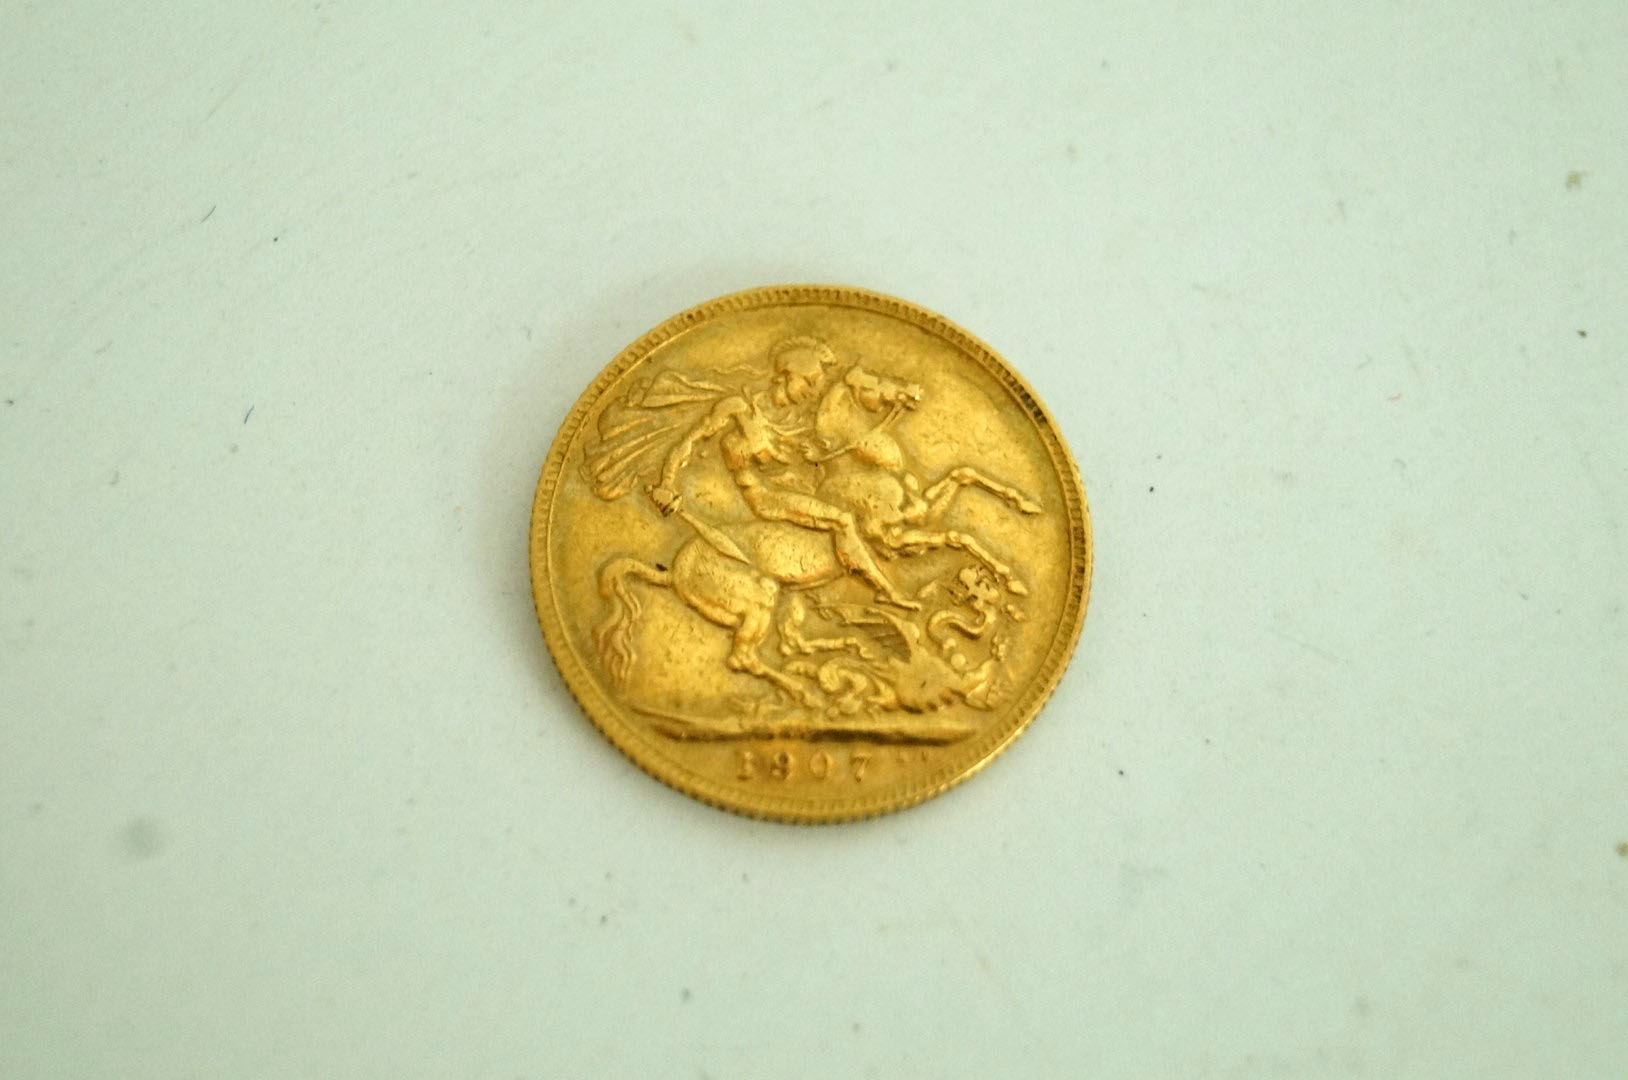 A gold half sovereign 1907